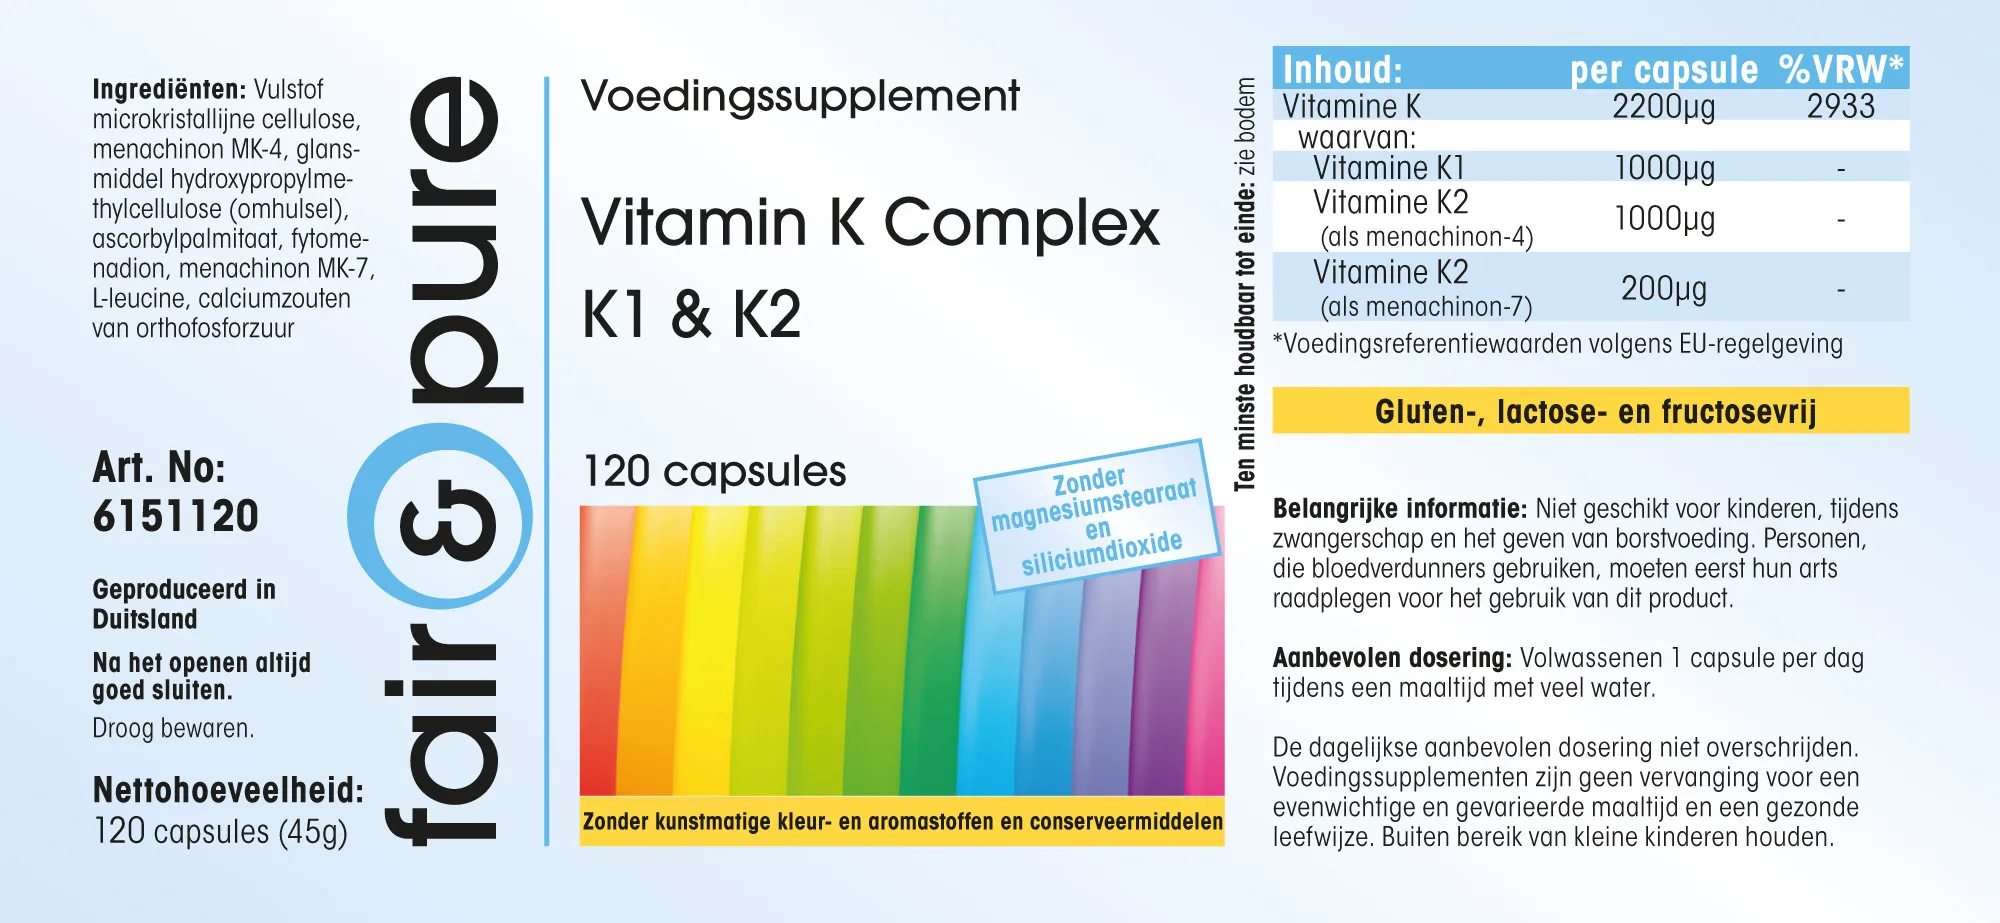 Complesso di Vitamina K